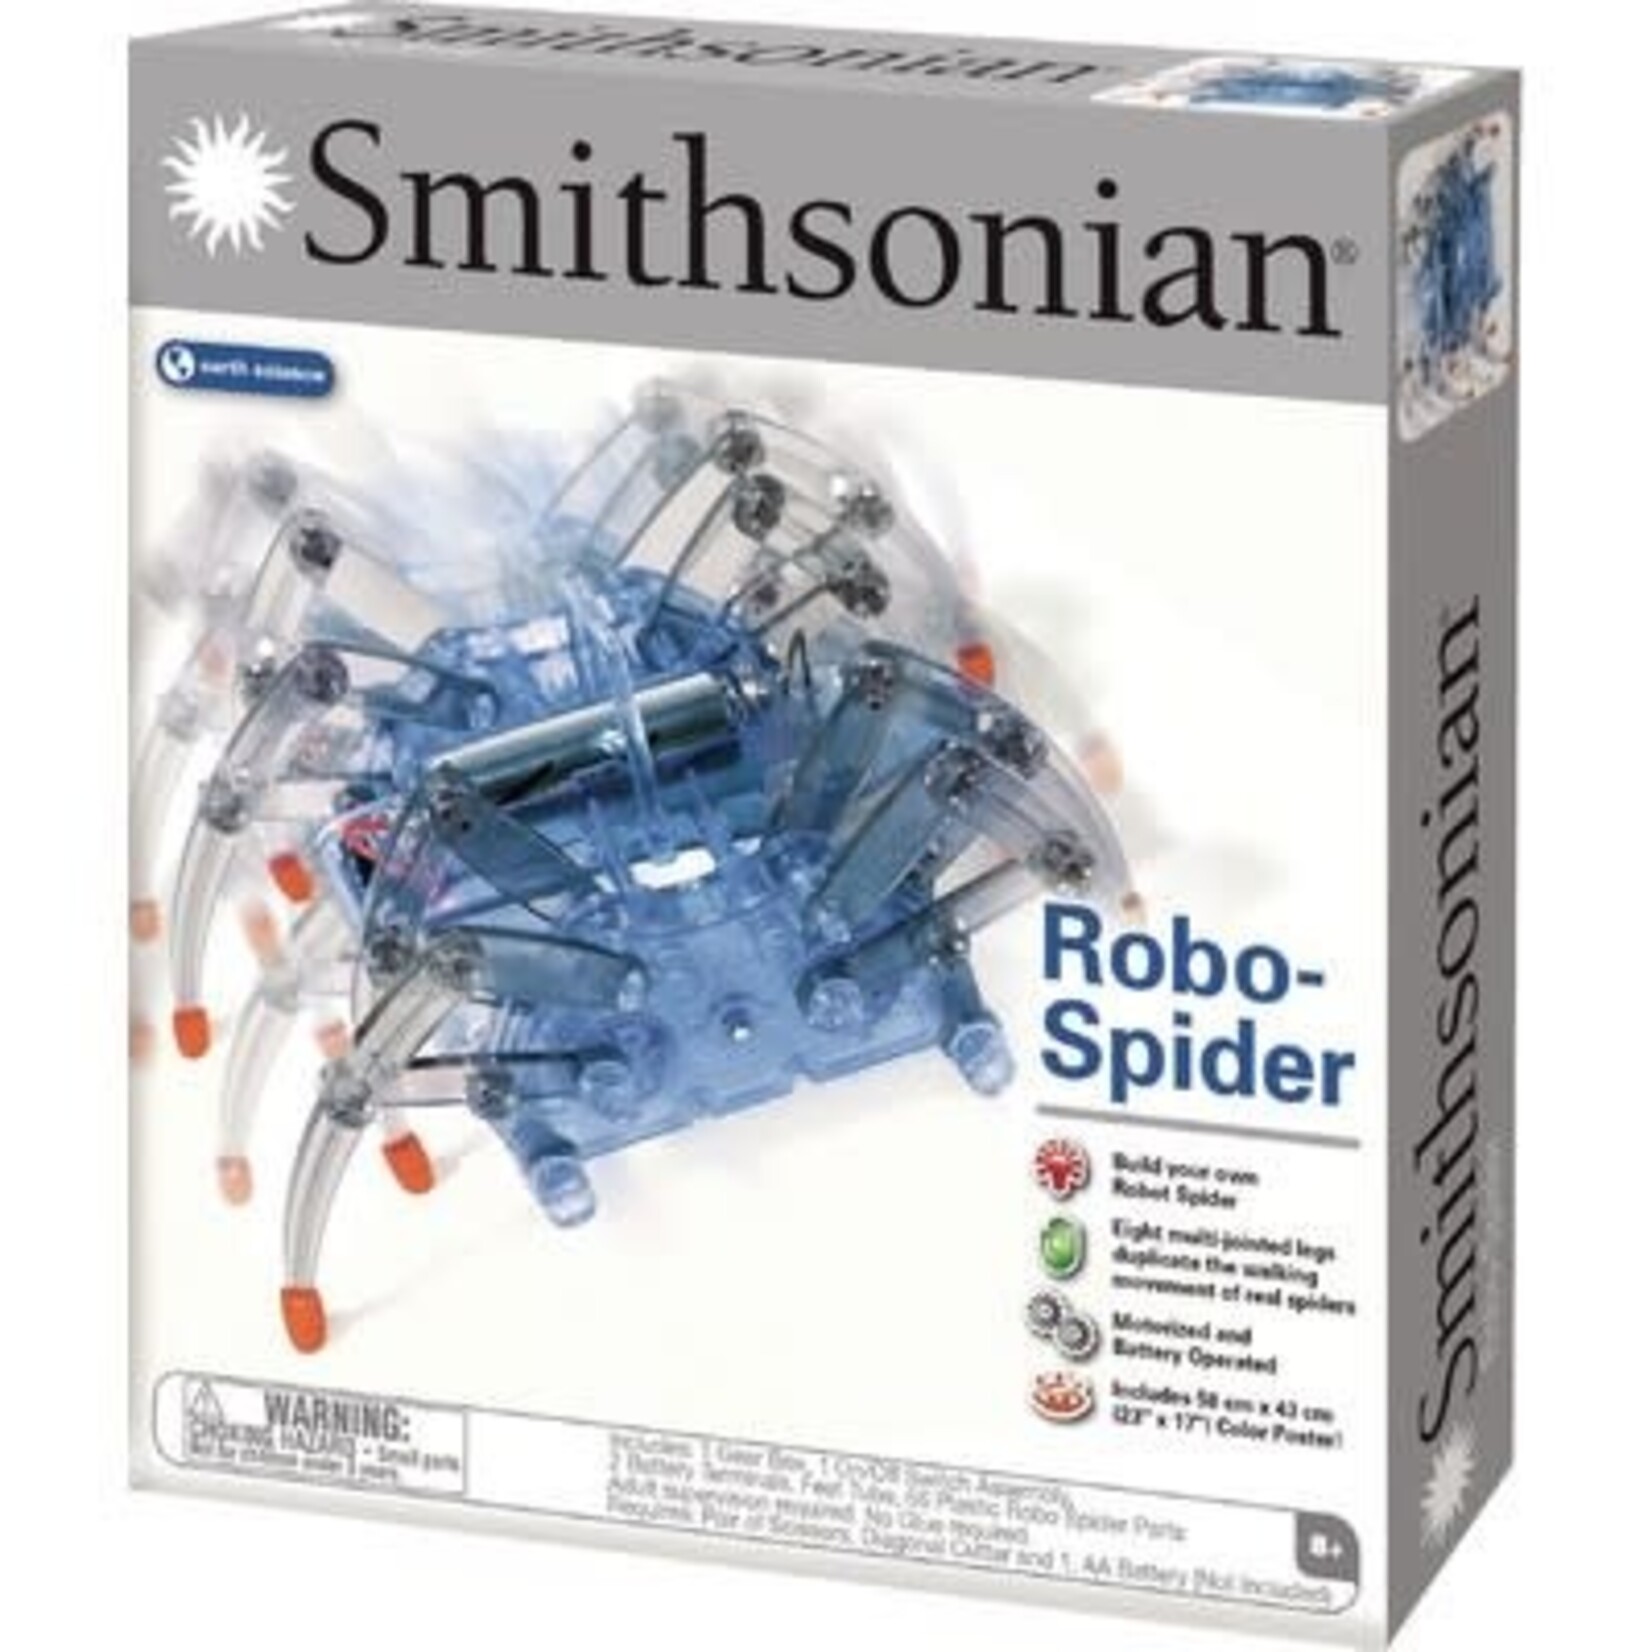 NSI Smithsonian Robo-Spider Science Kit